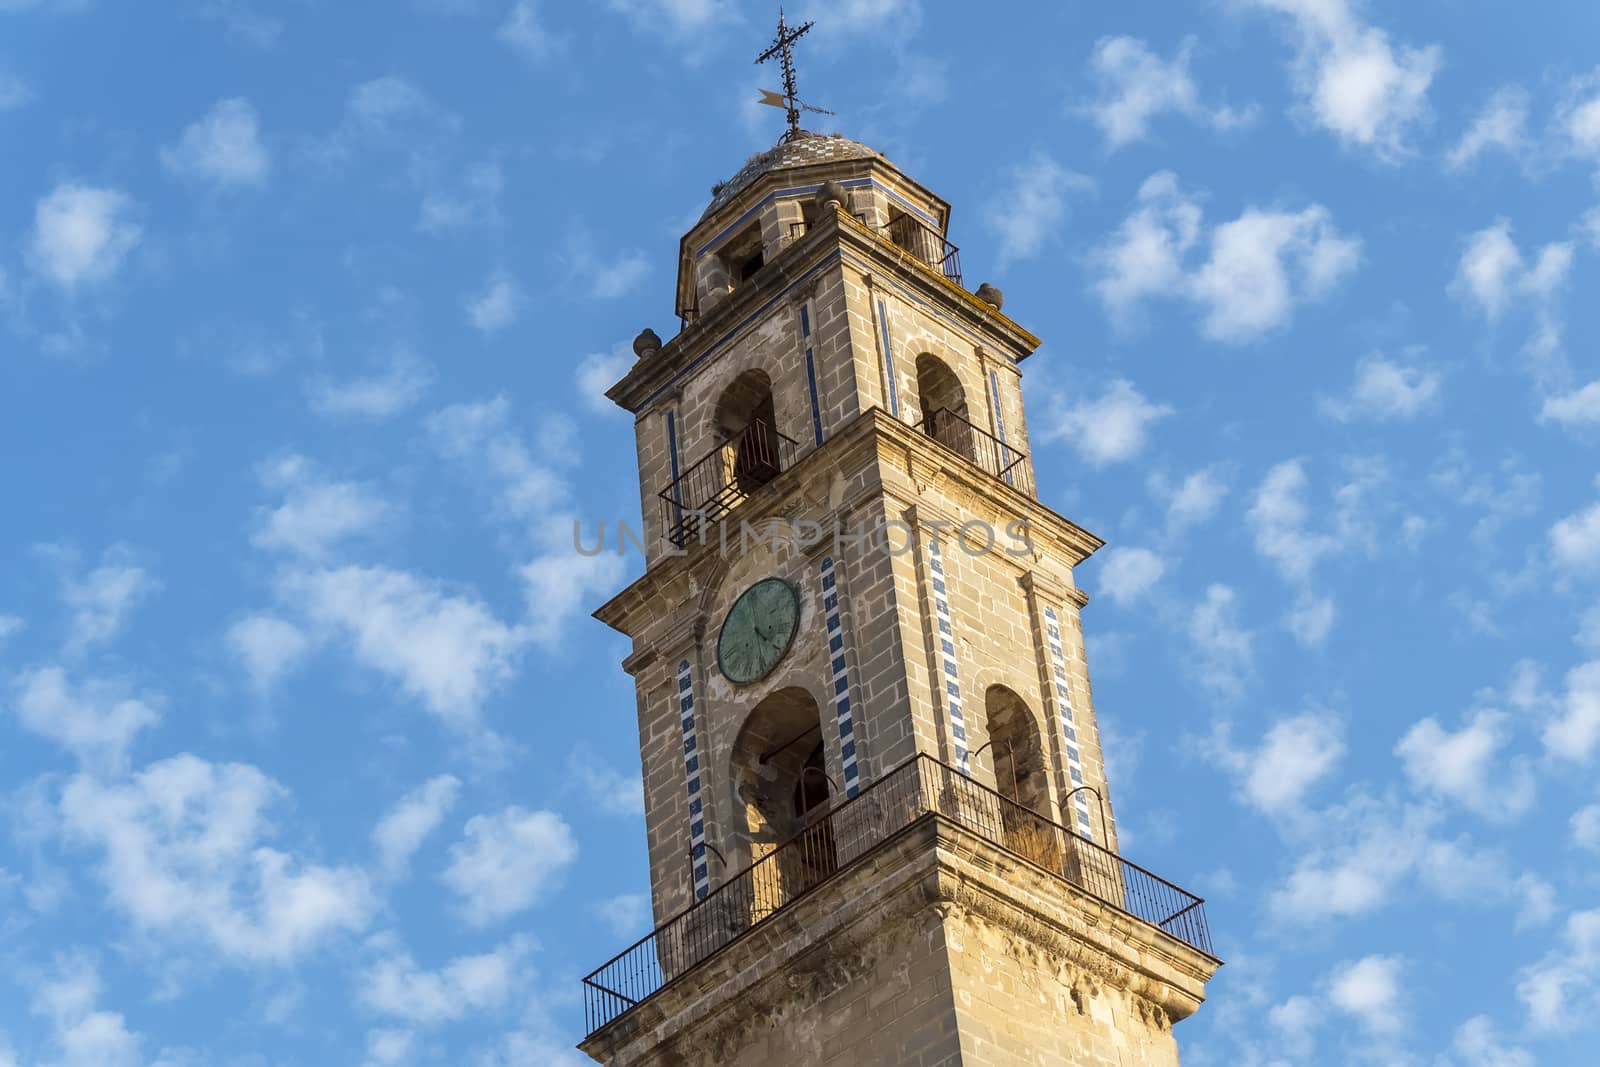 Minaret of the Jerez de la Frontera Cathedral, Spain by max8xam